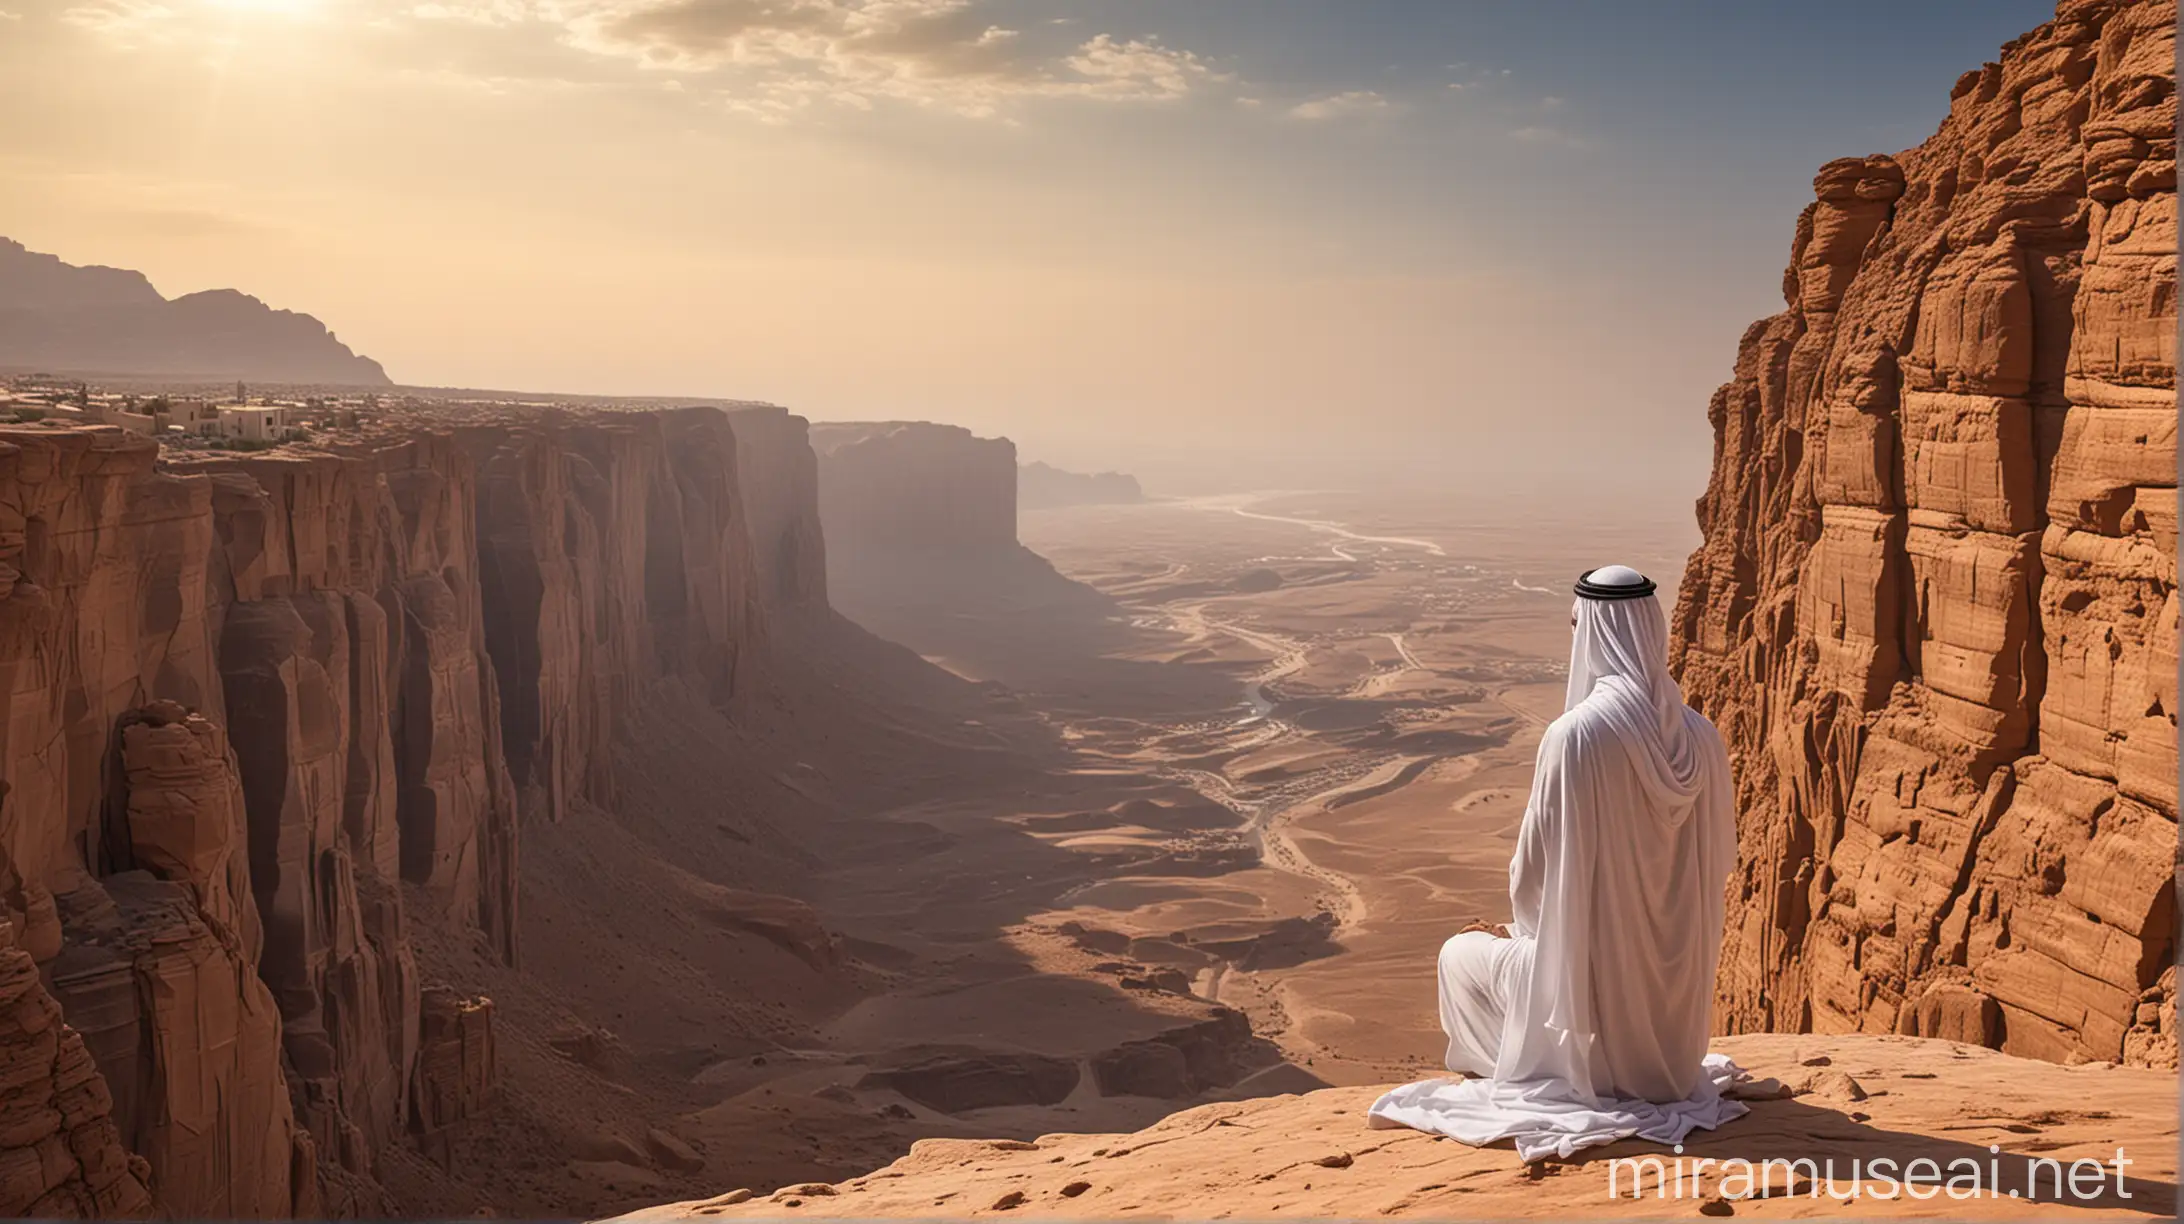 Arabian male prophet overlooking stunning cliff view...